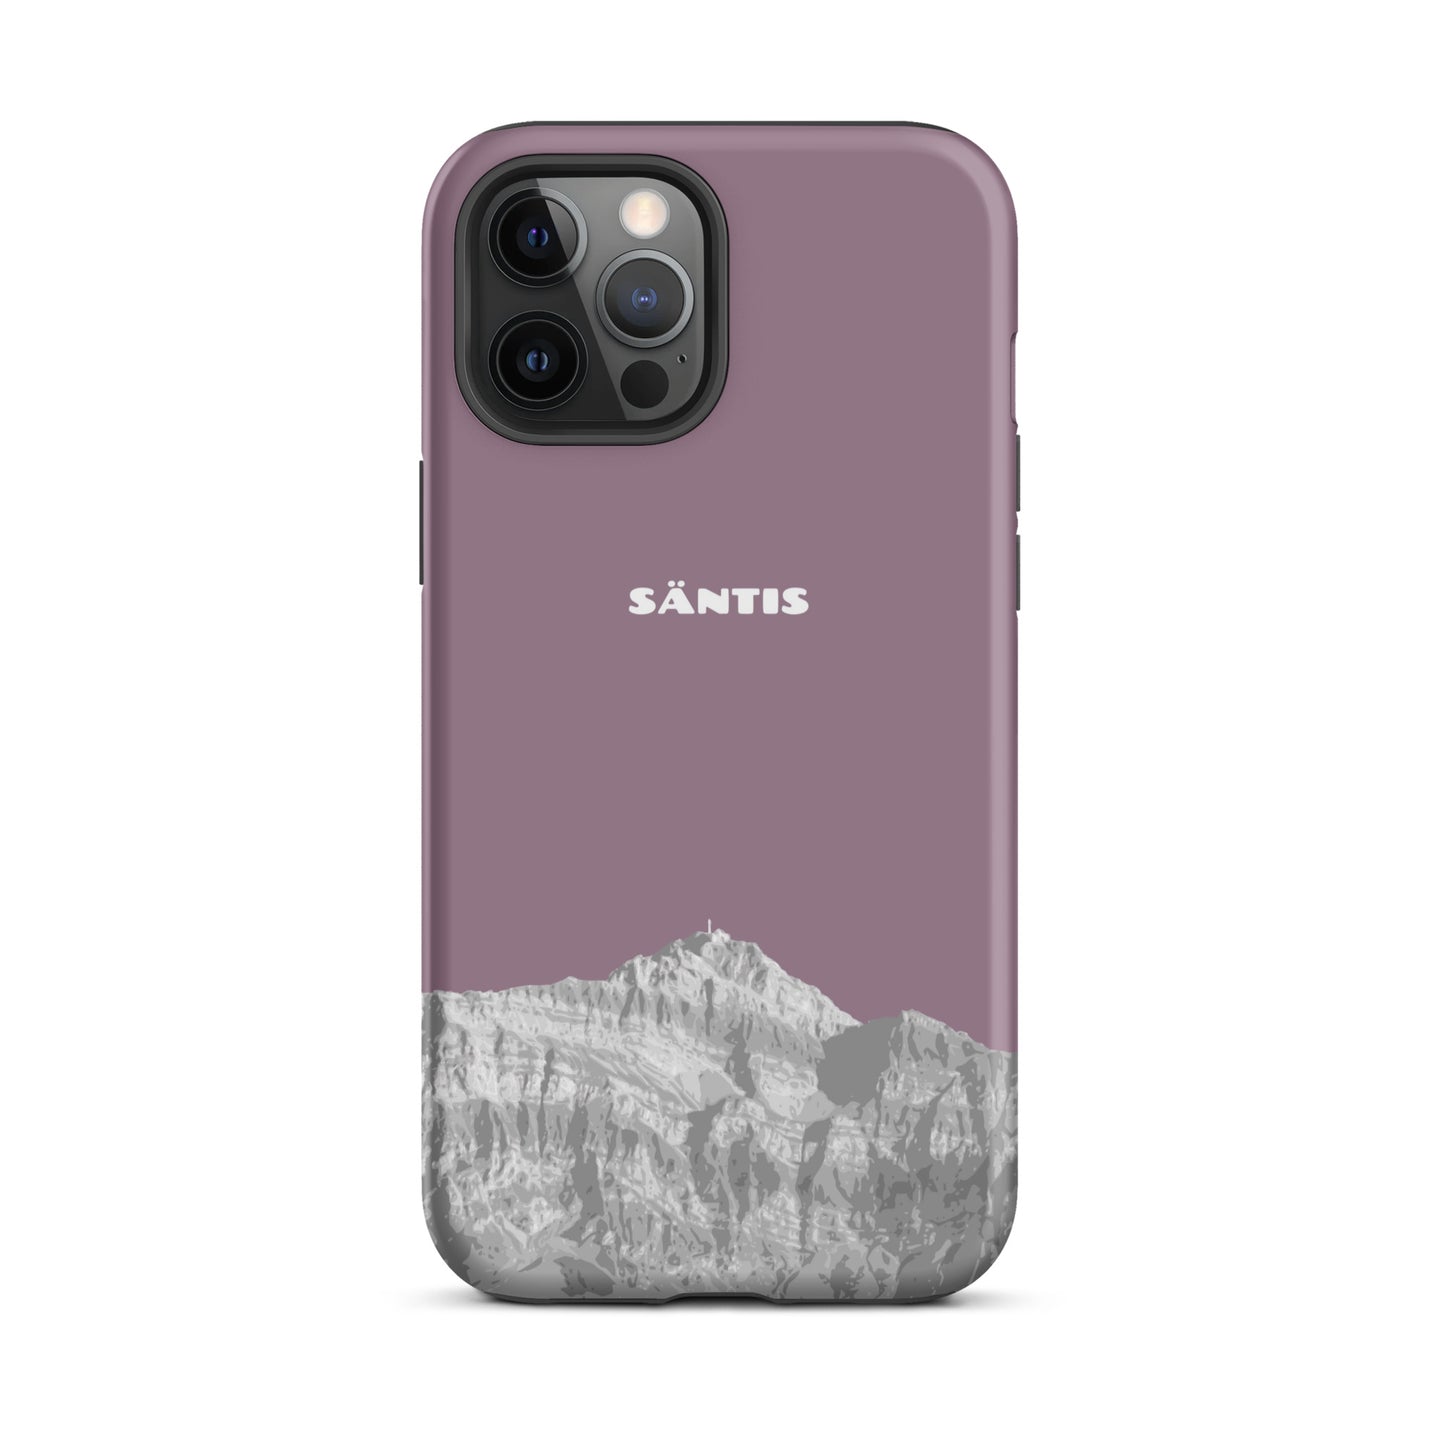 Hülle für das iPhone 12 Pro Max von Apple in der Farbe Pastellviolett, dass den Säntis im Alpstein zeigt.